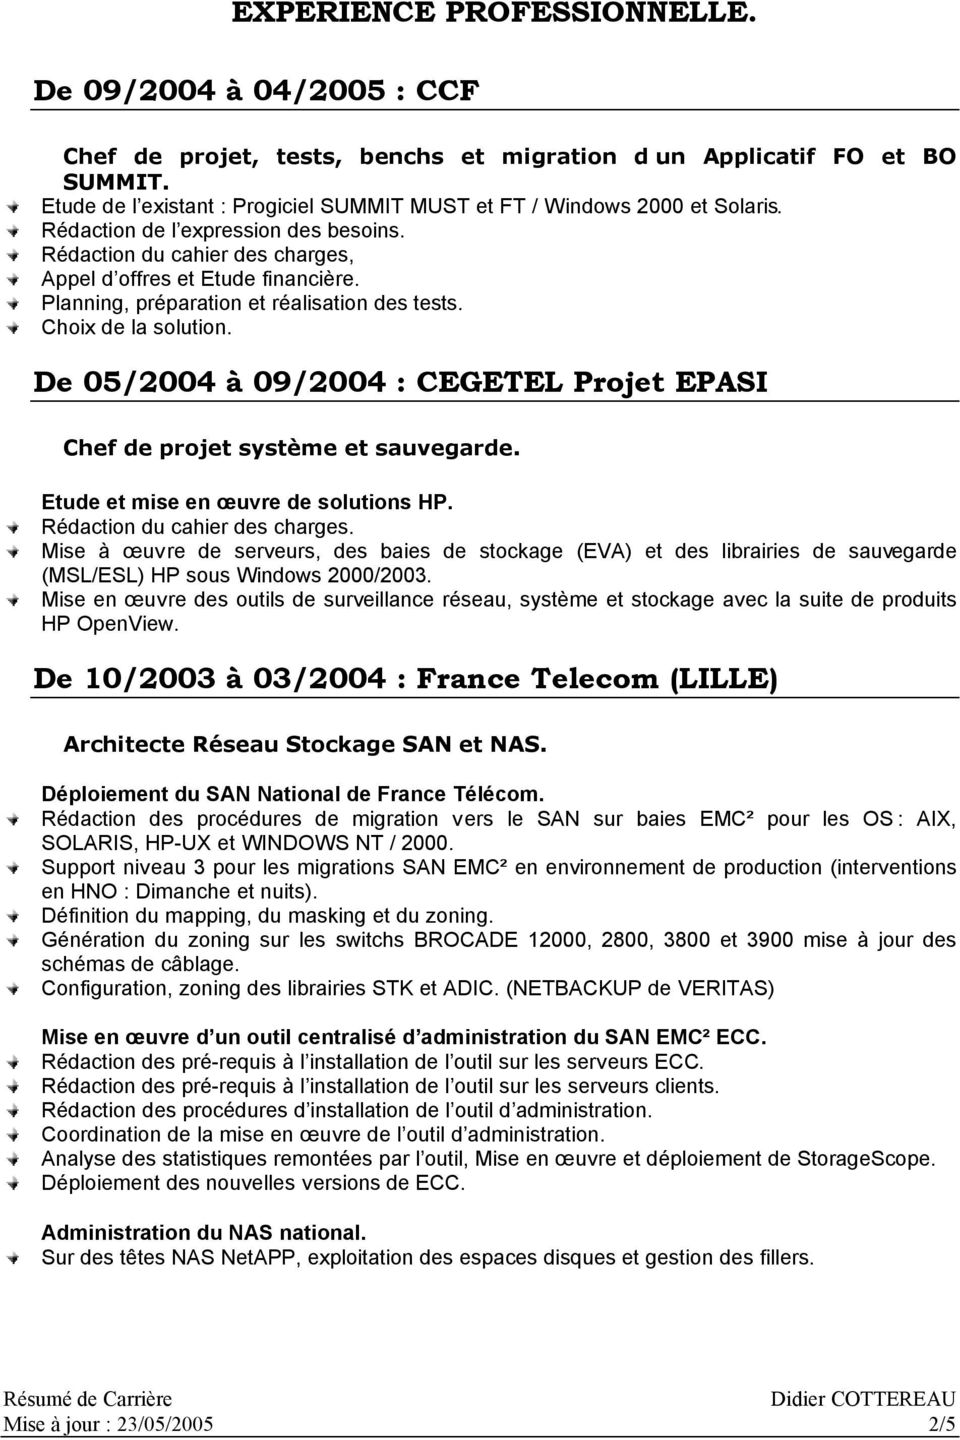 Planning, préparation et réalisation des tests. Choix de la solution. De 05/2004 09/2004 : CEGETEL Projet EPASI Chef de projet systłme et sauvegarde. Etude et mise en œuvre de solutions HP.